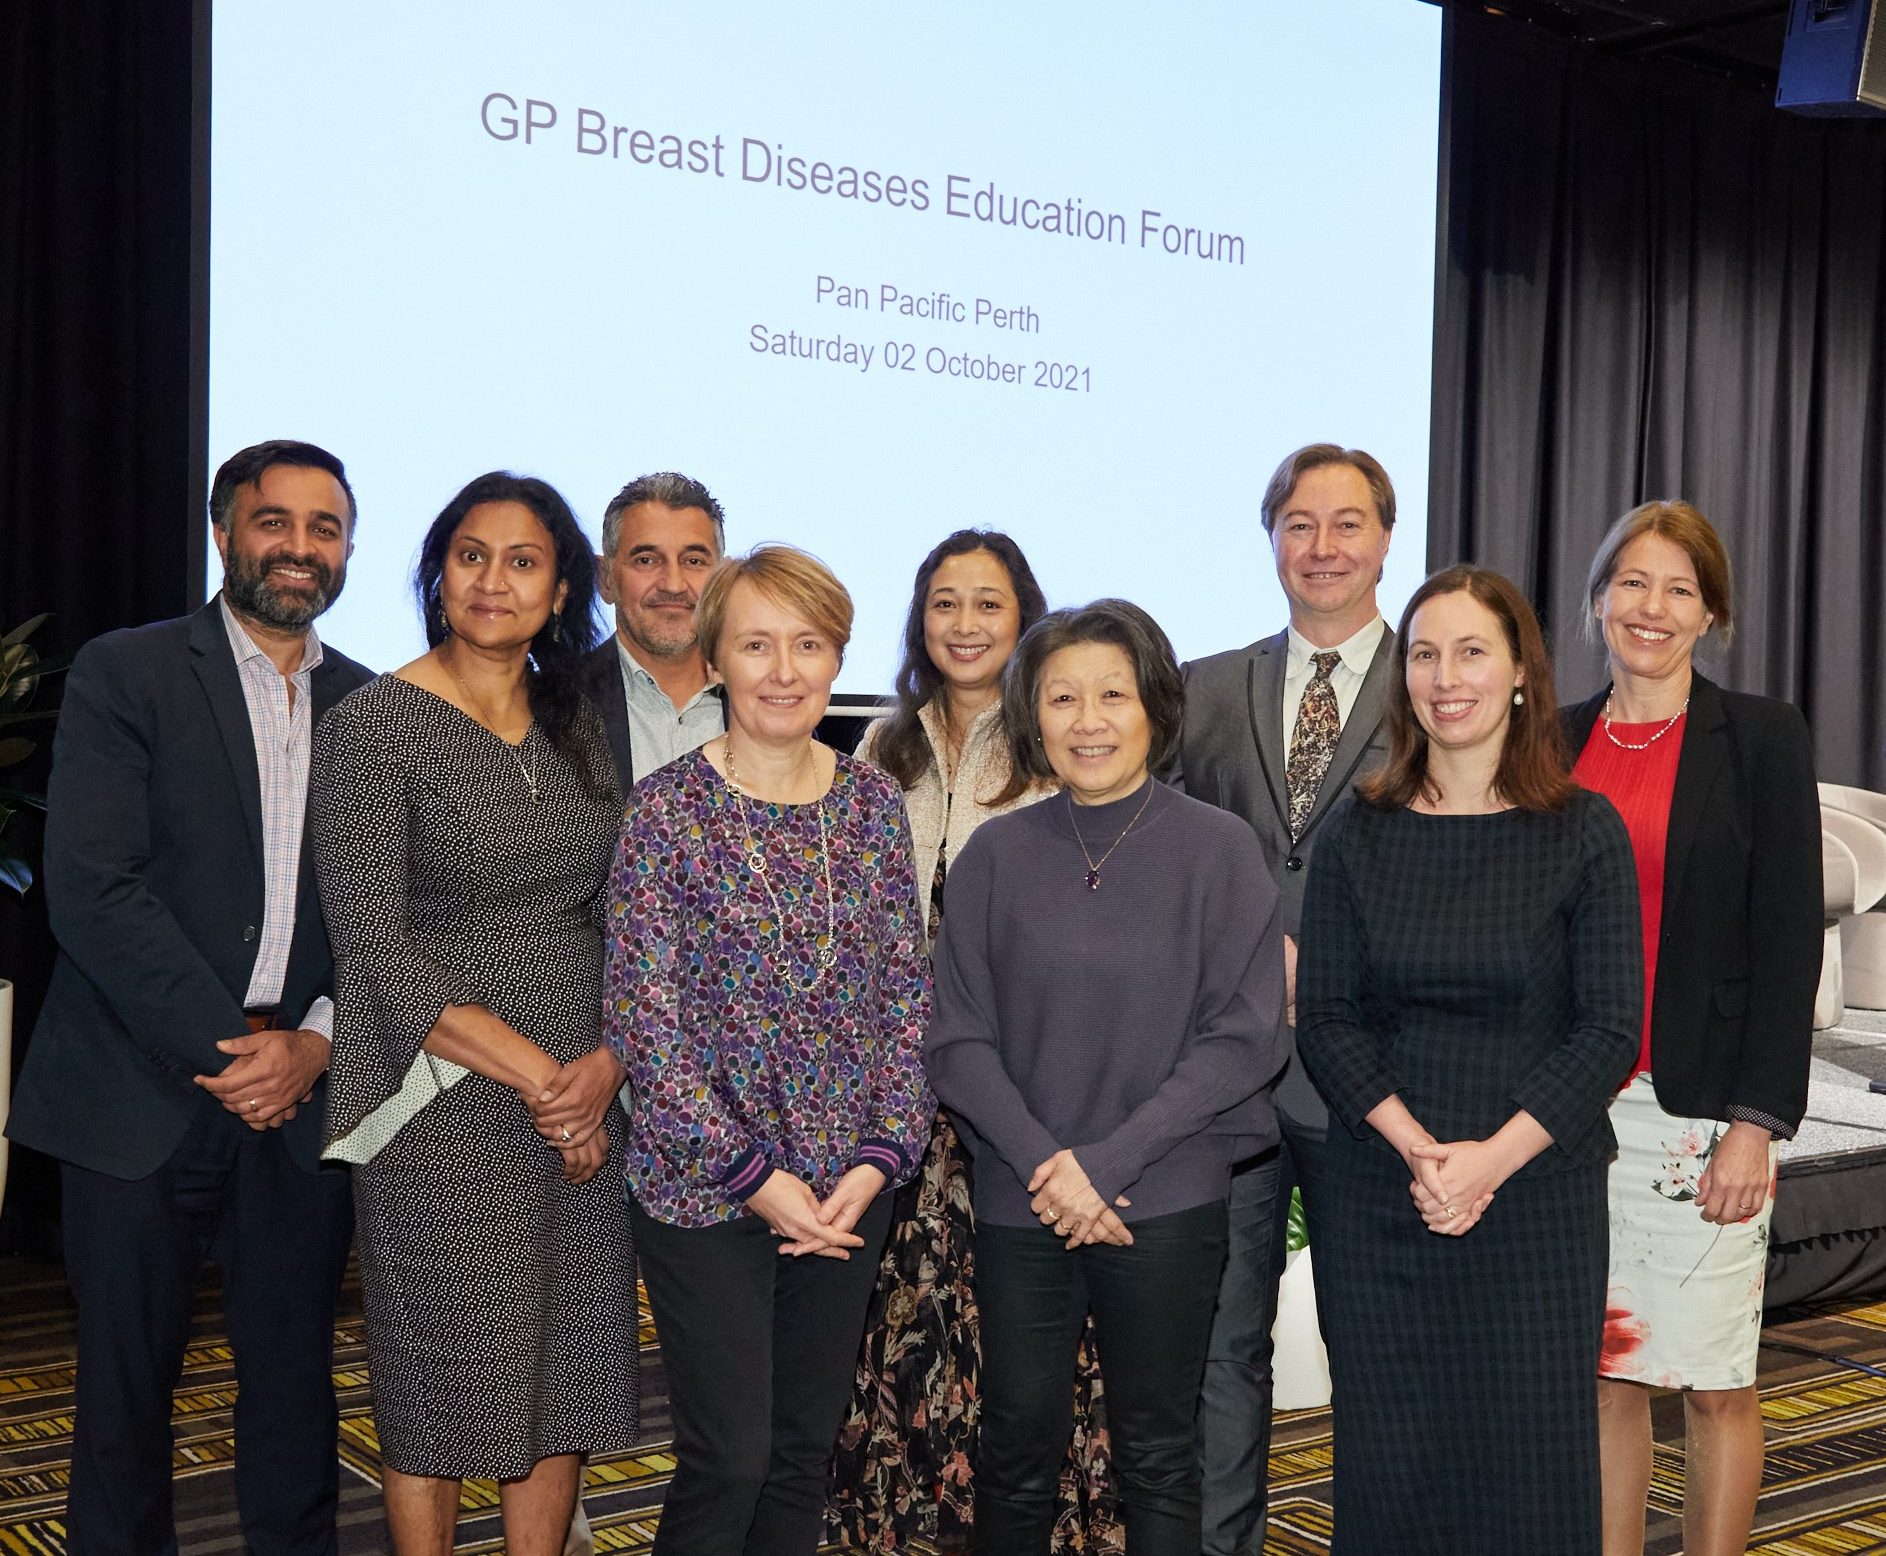 GP Breast Diseases Education Forum 2021 